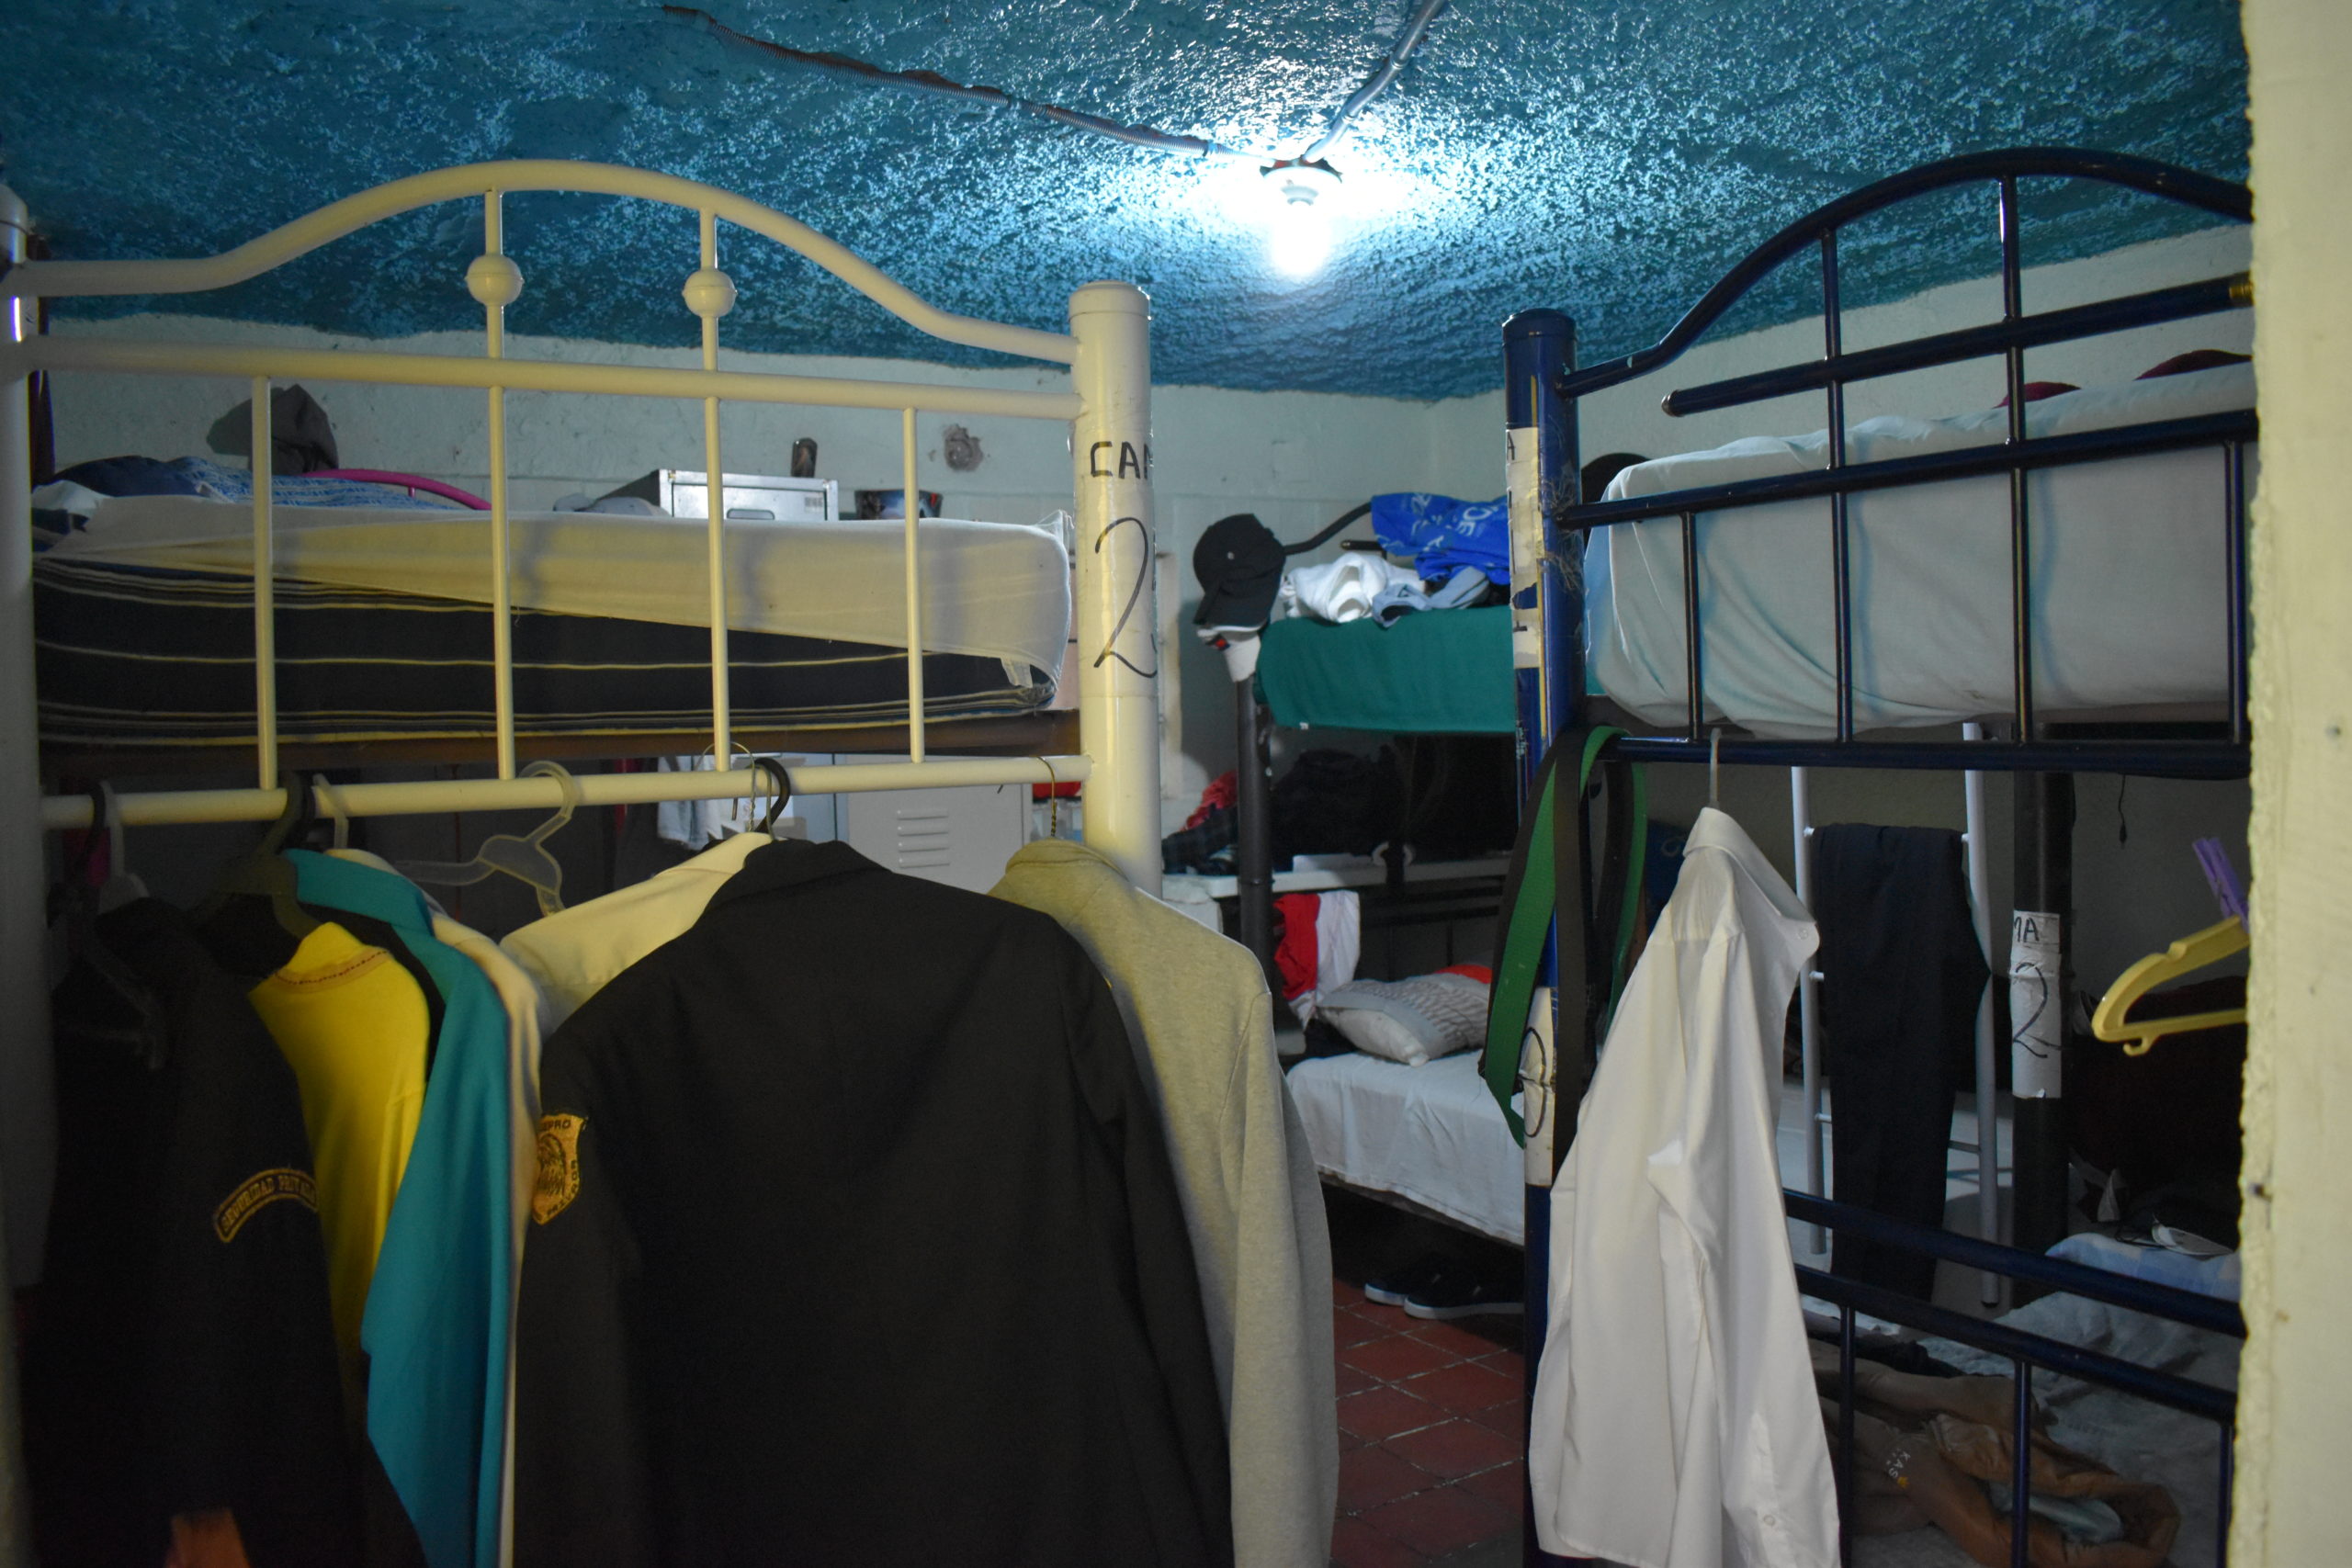 Las habitaciones en Casa Tochán son espacios reducidos donde a veces se ponen colchonetas para recibir a más personas. | Foto: Emilio Almaraz / Conexión Migrante.